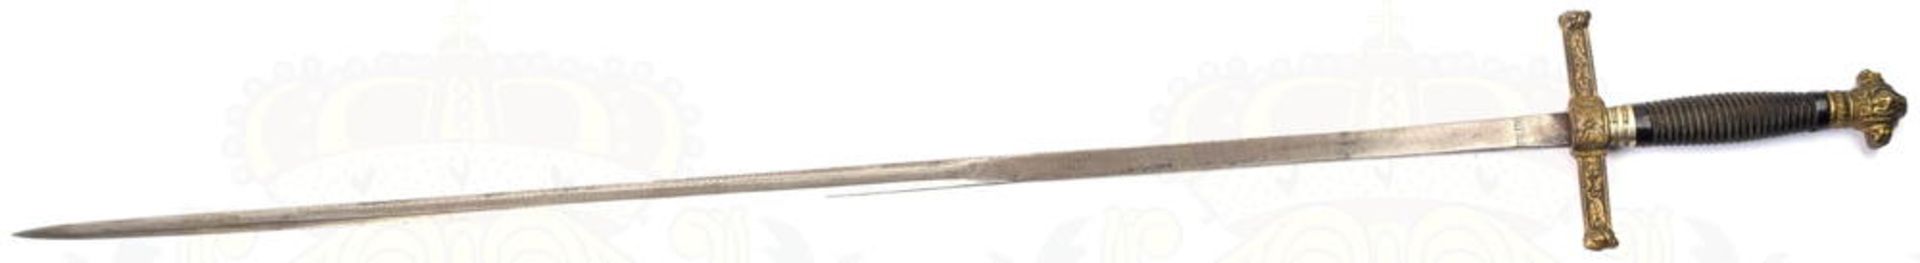 DEGEN, blanke zweischneidige Klinge m. 24cm langer Fehlschärfe, eingeschlagene Bez. „Toledo“, L. 75c - Bild 4 aus 11